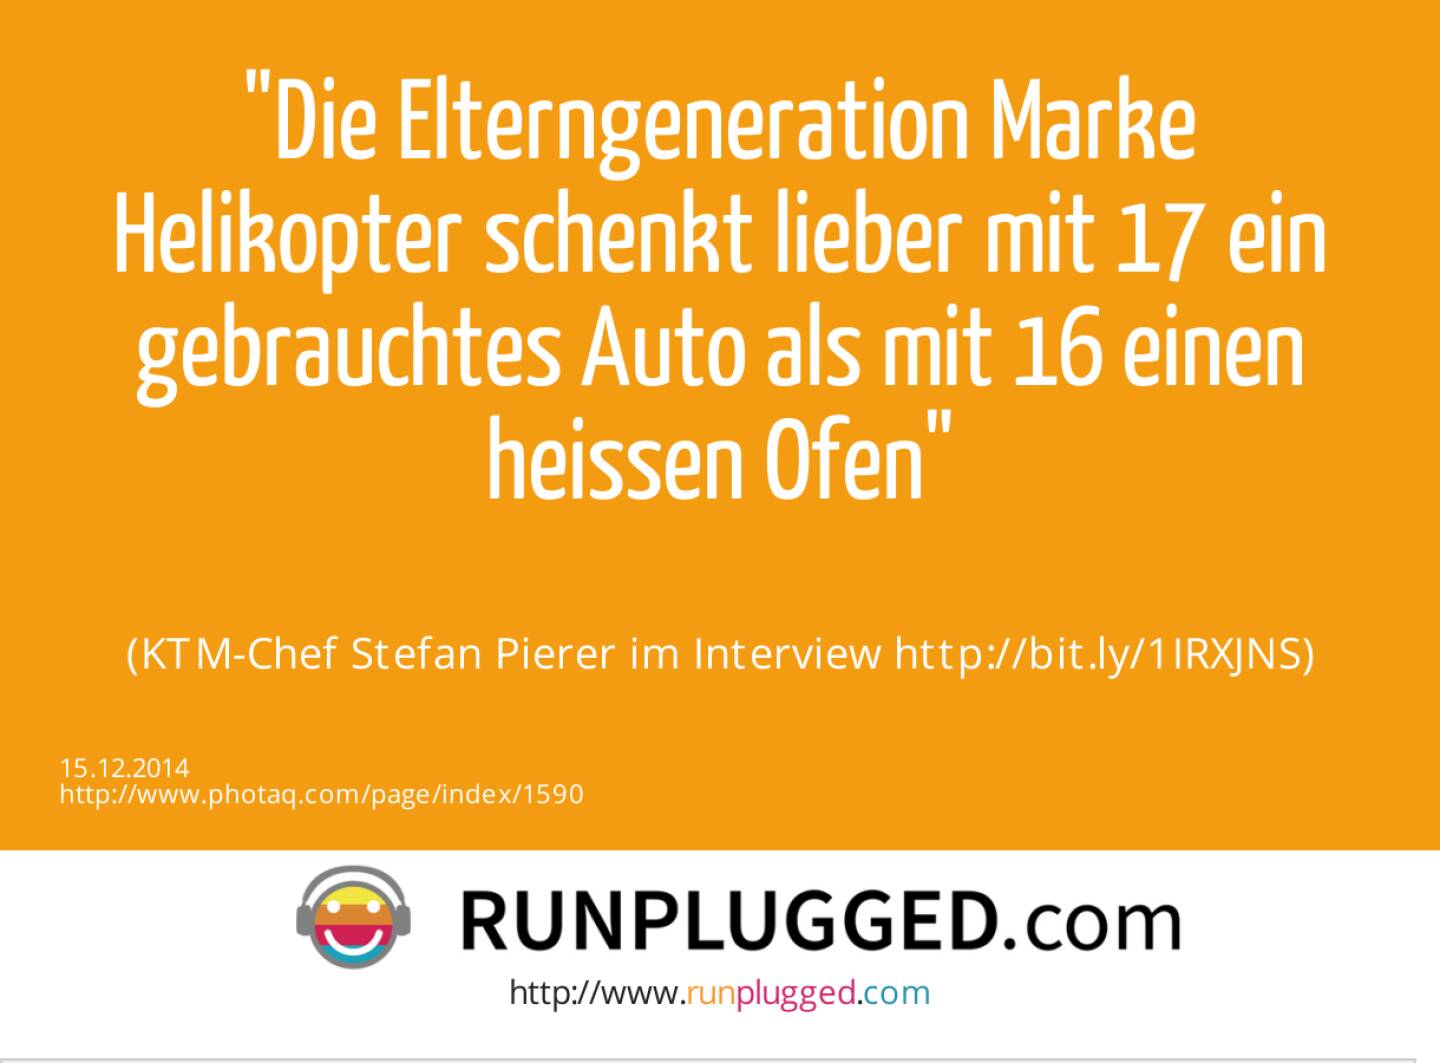 Die Elterngeneration Marke Helikopter schenkt lieber mit 17 ein gebrauchtes Auto als mit 16 einen heissen Ofen<br><br> (KTM-Chef Stefan Pierer im Interview http://bit.ly/1IRXJNS)